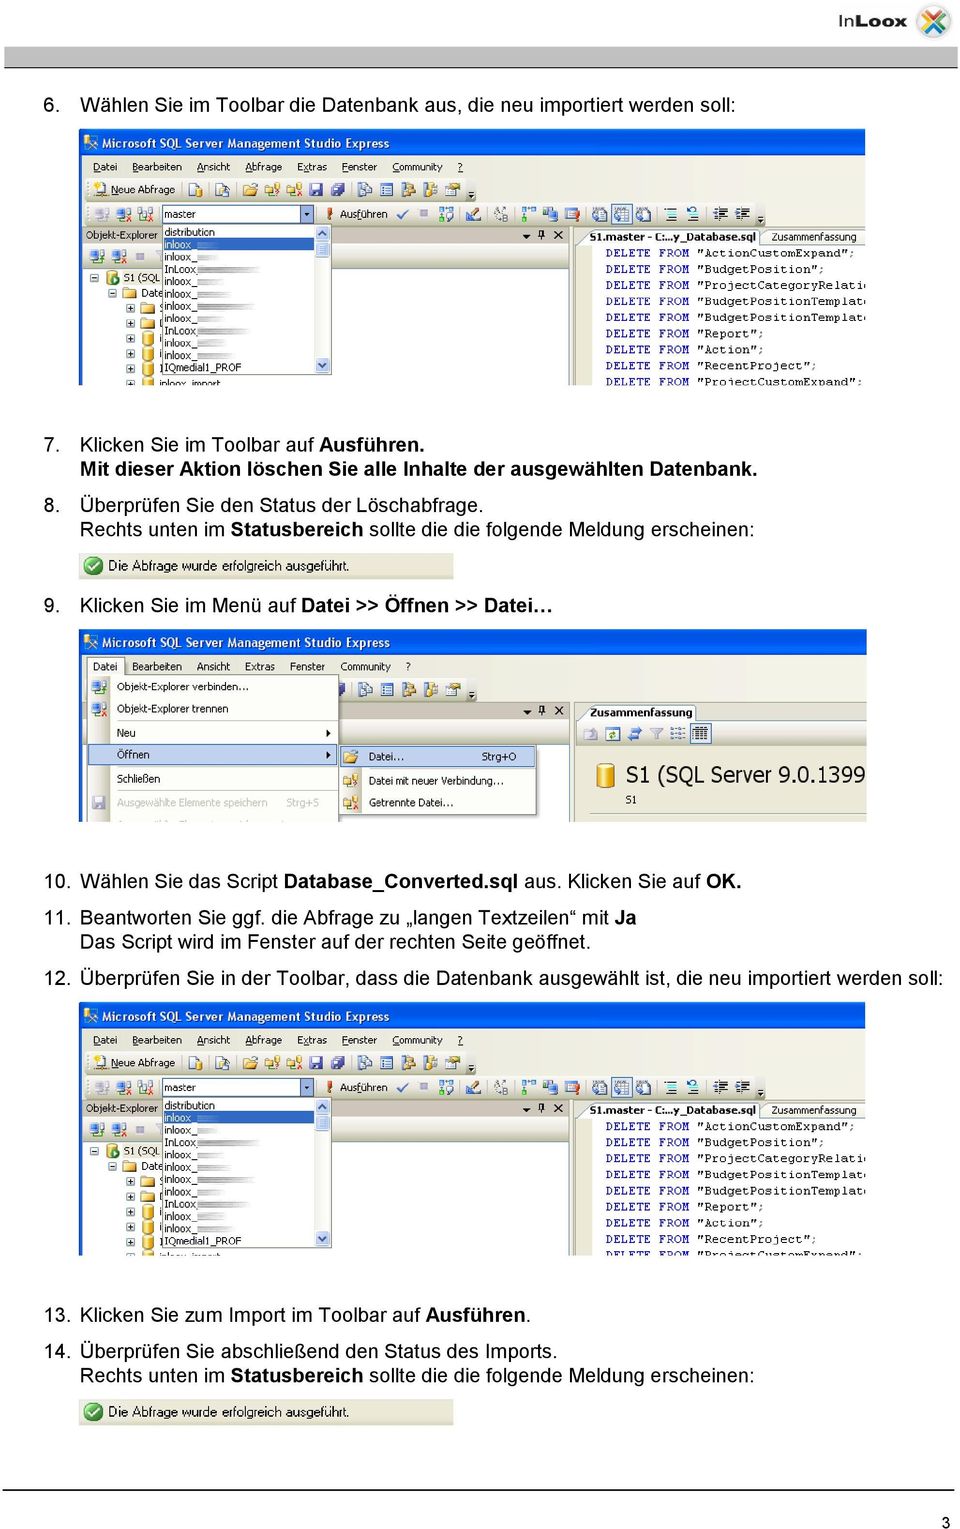 Wählen Sie das Script Database_Converted.sql aus. Klicken Sie auf OK. 11. Beantworten Sie ggf. die Abfrage zu langen Textzeilen mit Ja Das Script wird im Fenster auf der rechten Seite geöffnet. 12.